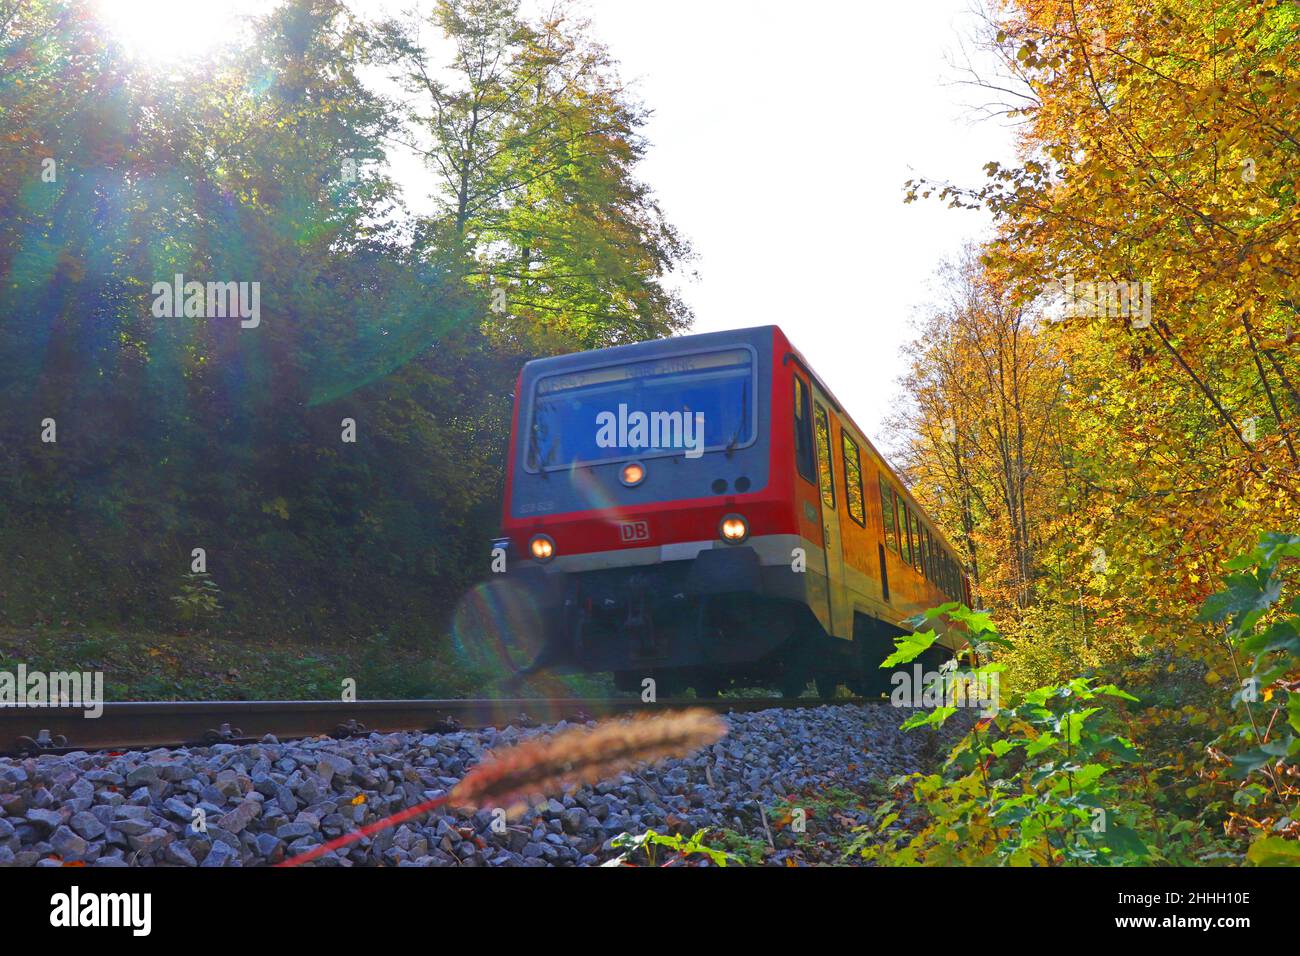 ein Triebwagen der Traun-Alz-Bahn fährt durch herbstlich gefärbten Wald * rail travel through autumn forest Stock Photo